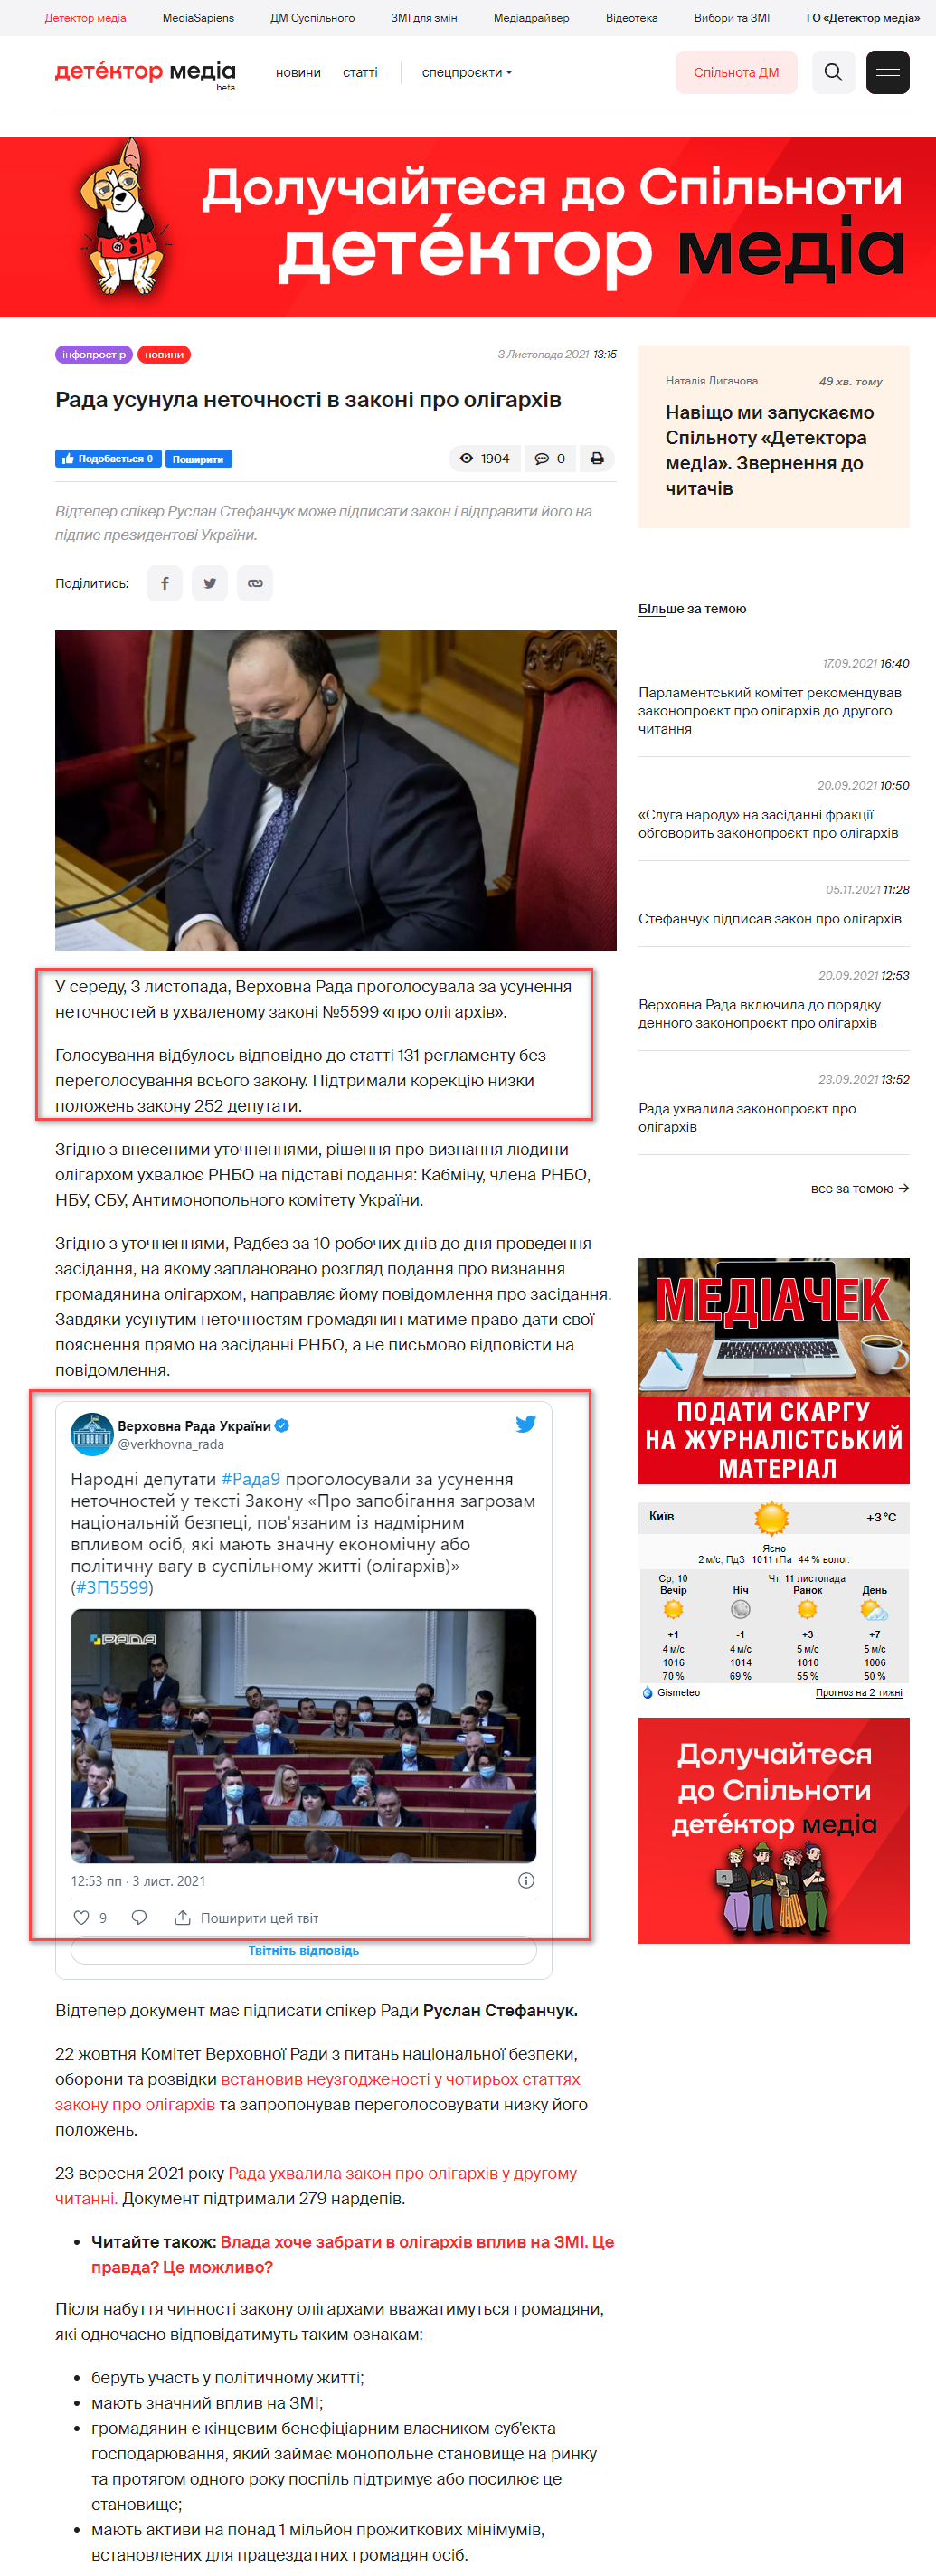 https://detector.media/infospace/article/193461/2021-11-03-rada-usunula-netochnosti-v-zakoni-pro-oligarkhiv/